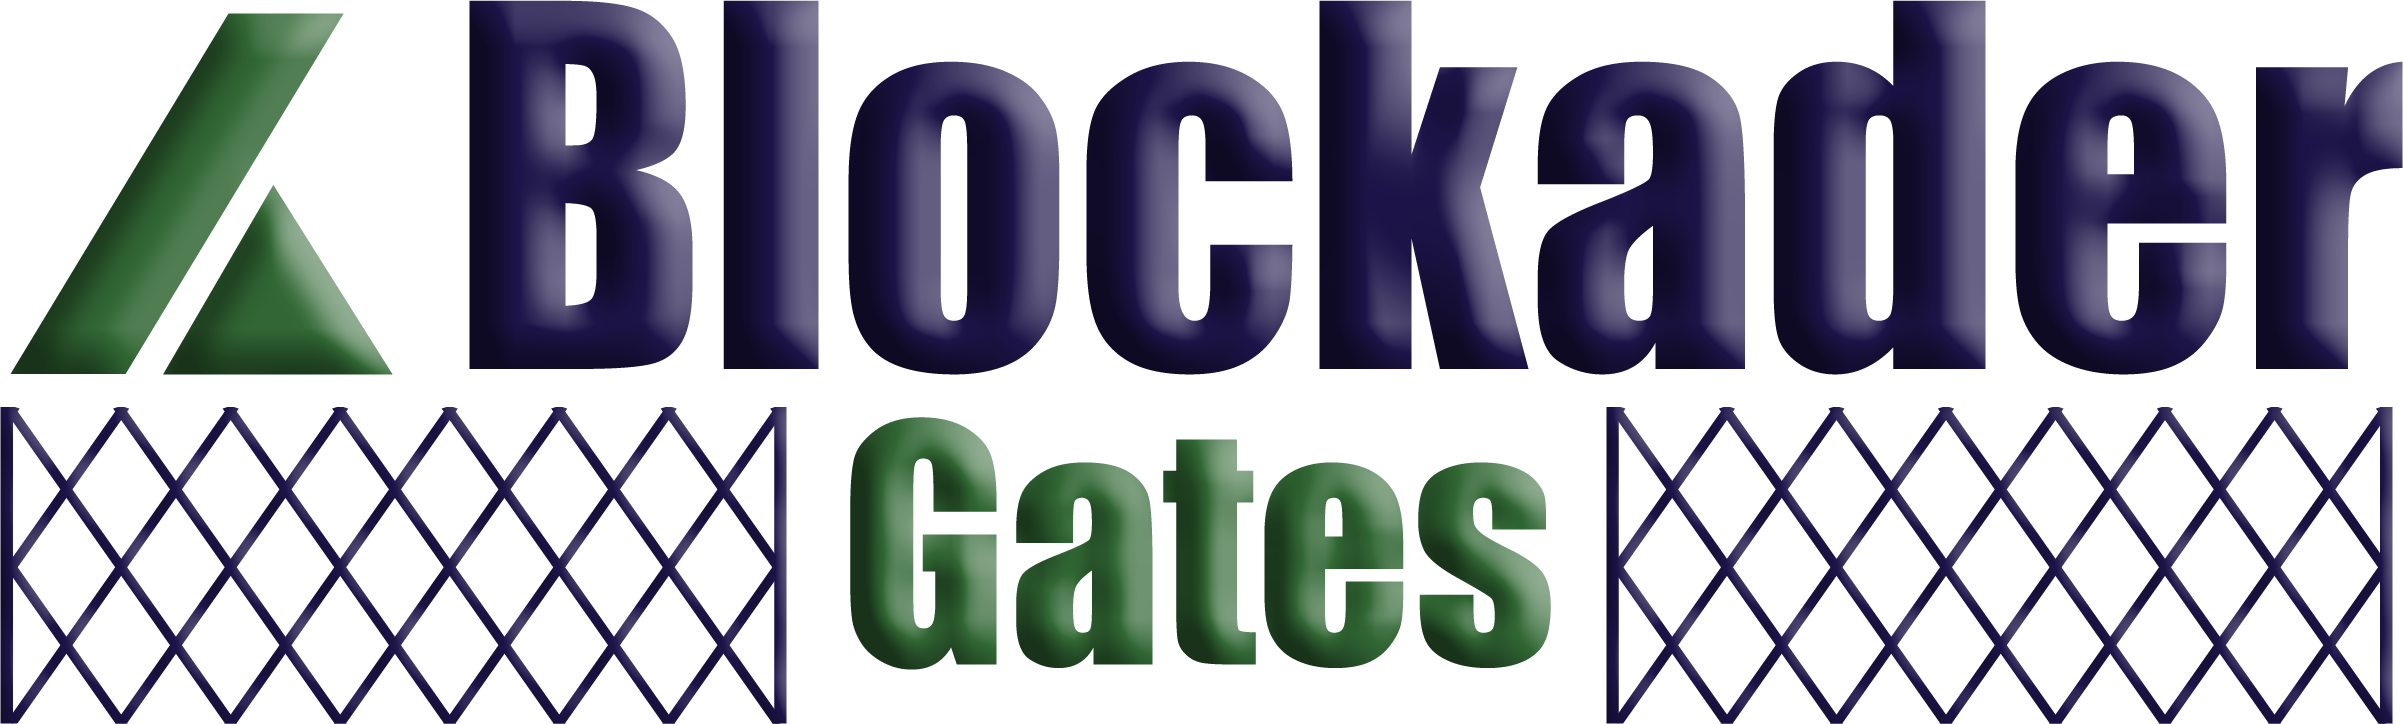 Blockader Gates